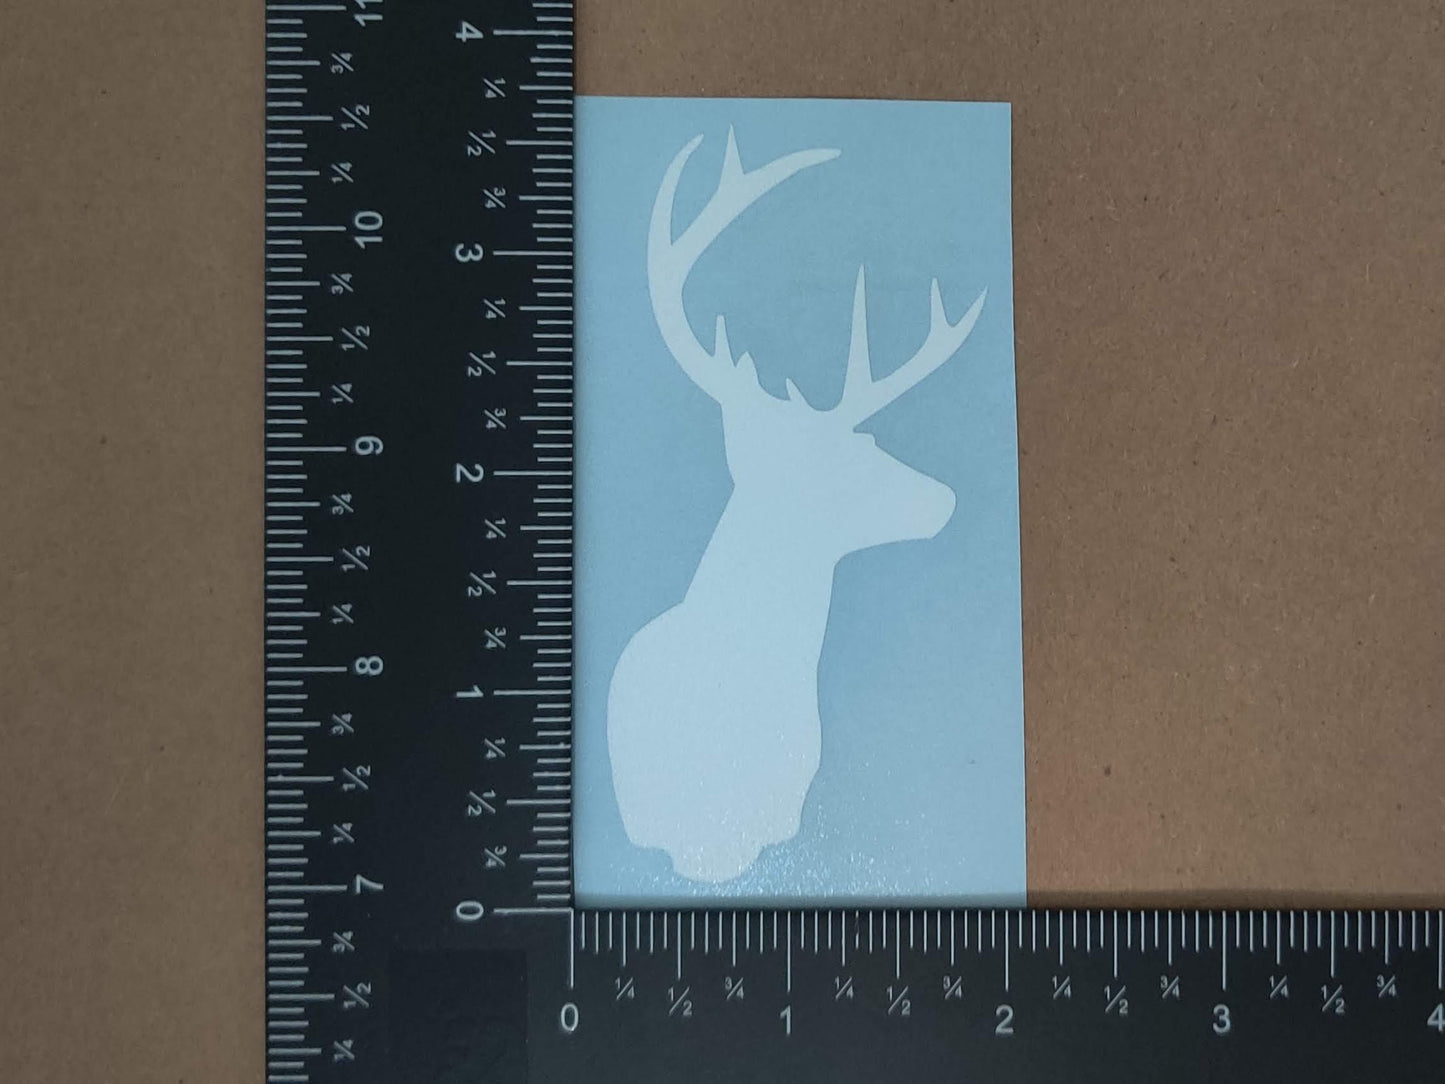 Deer Doe Decal 4 Pack